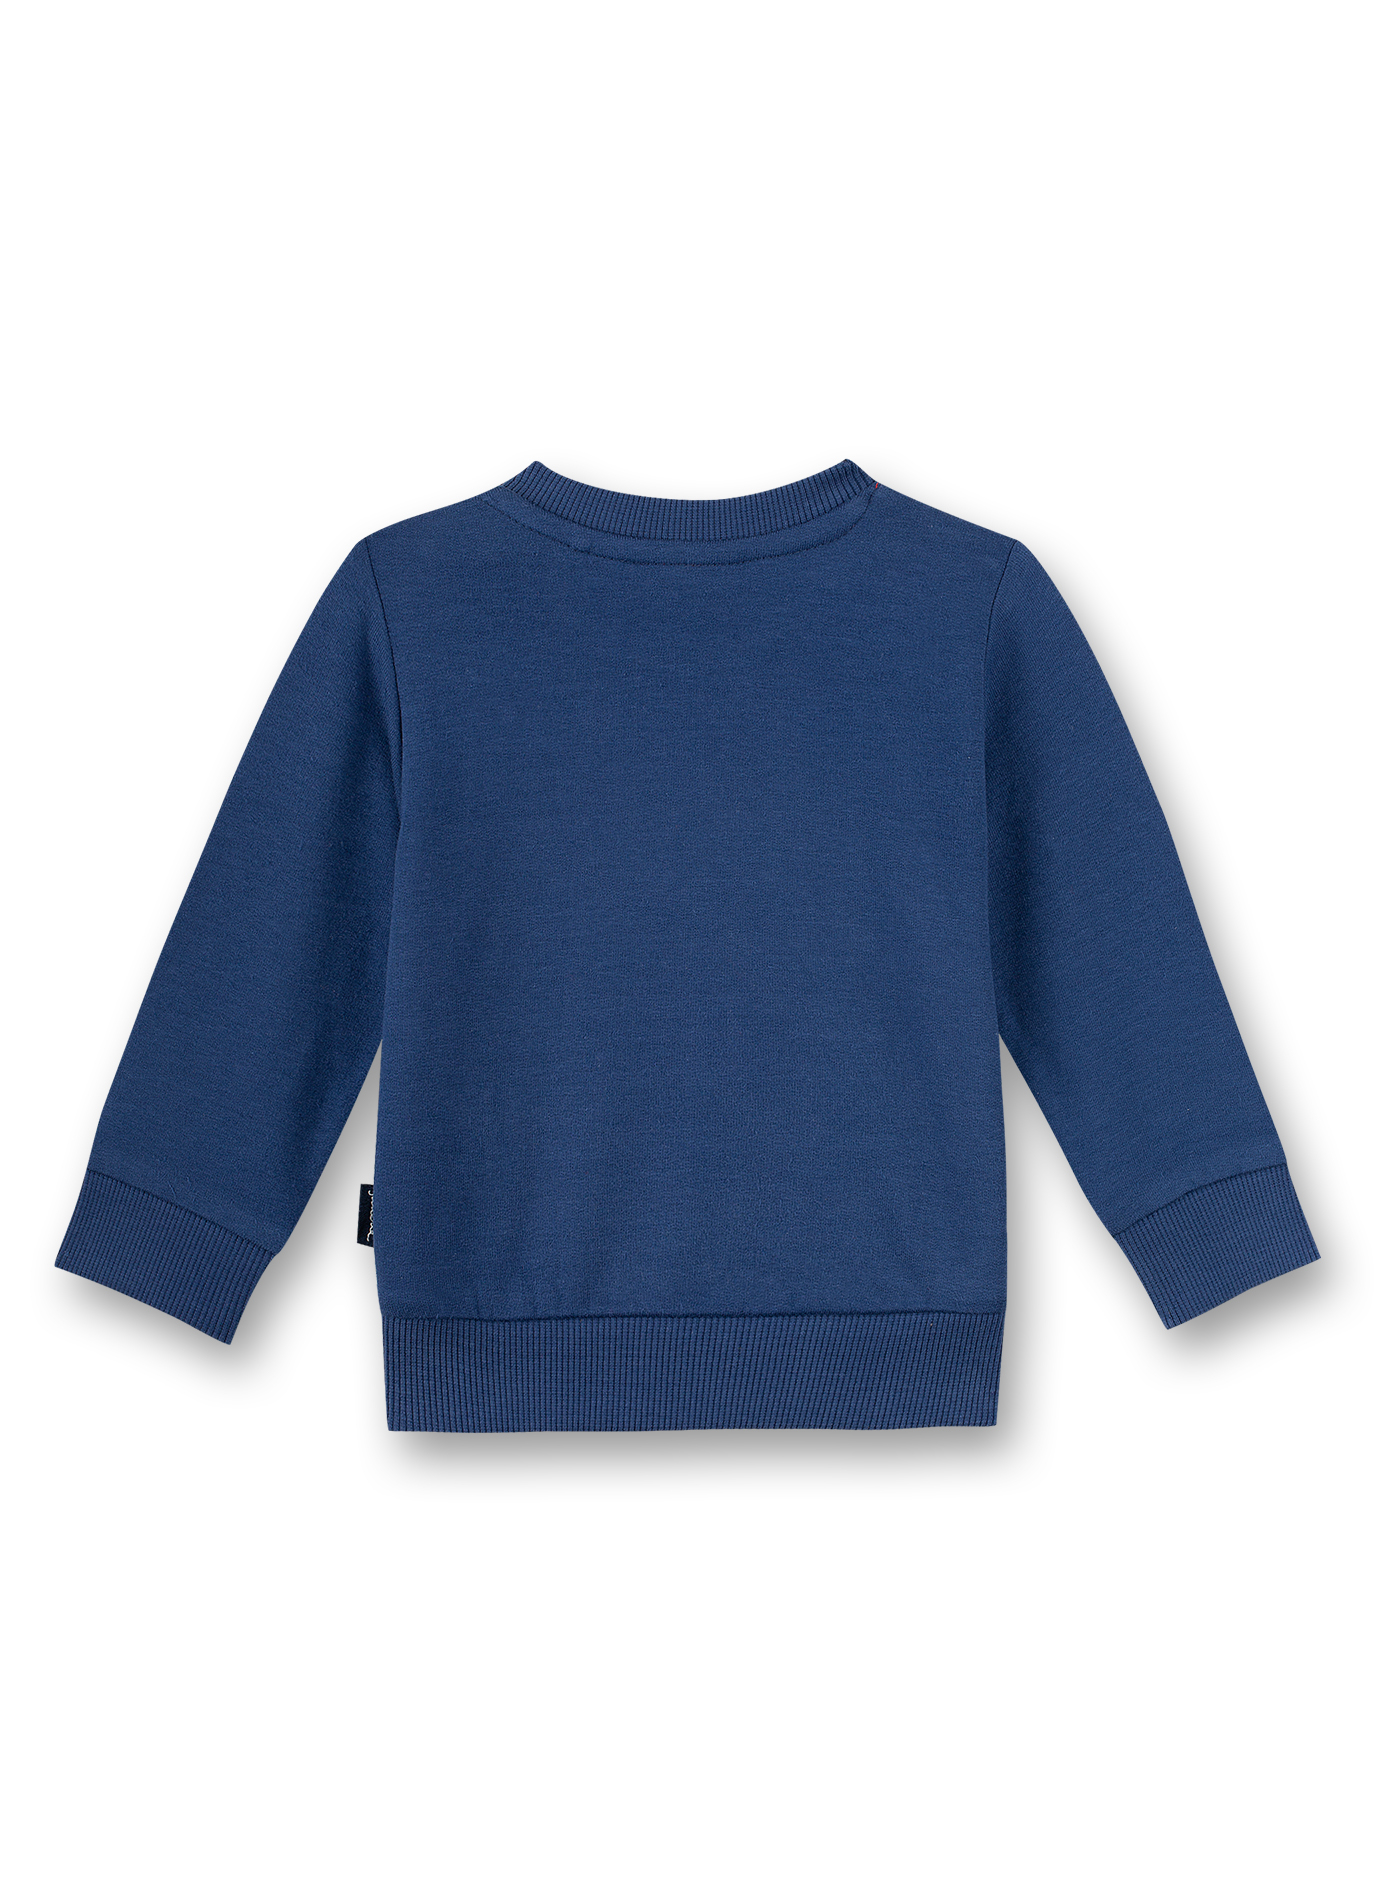 Jungen-Sweatshirt Blau Inter Galactic